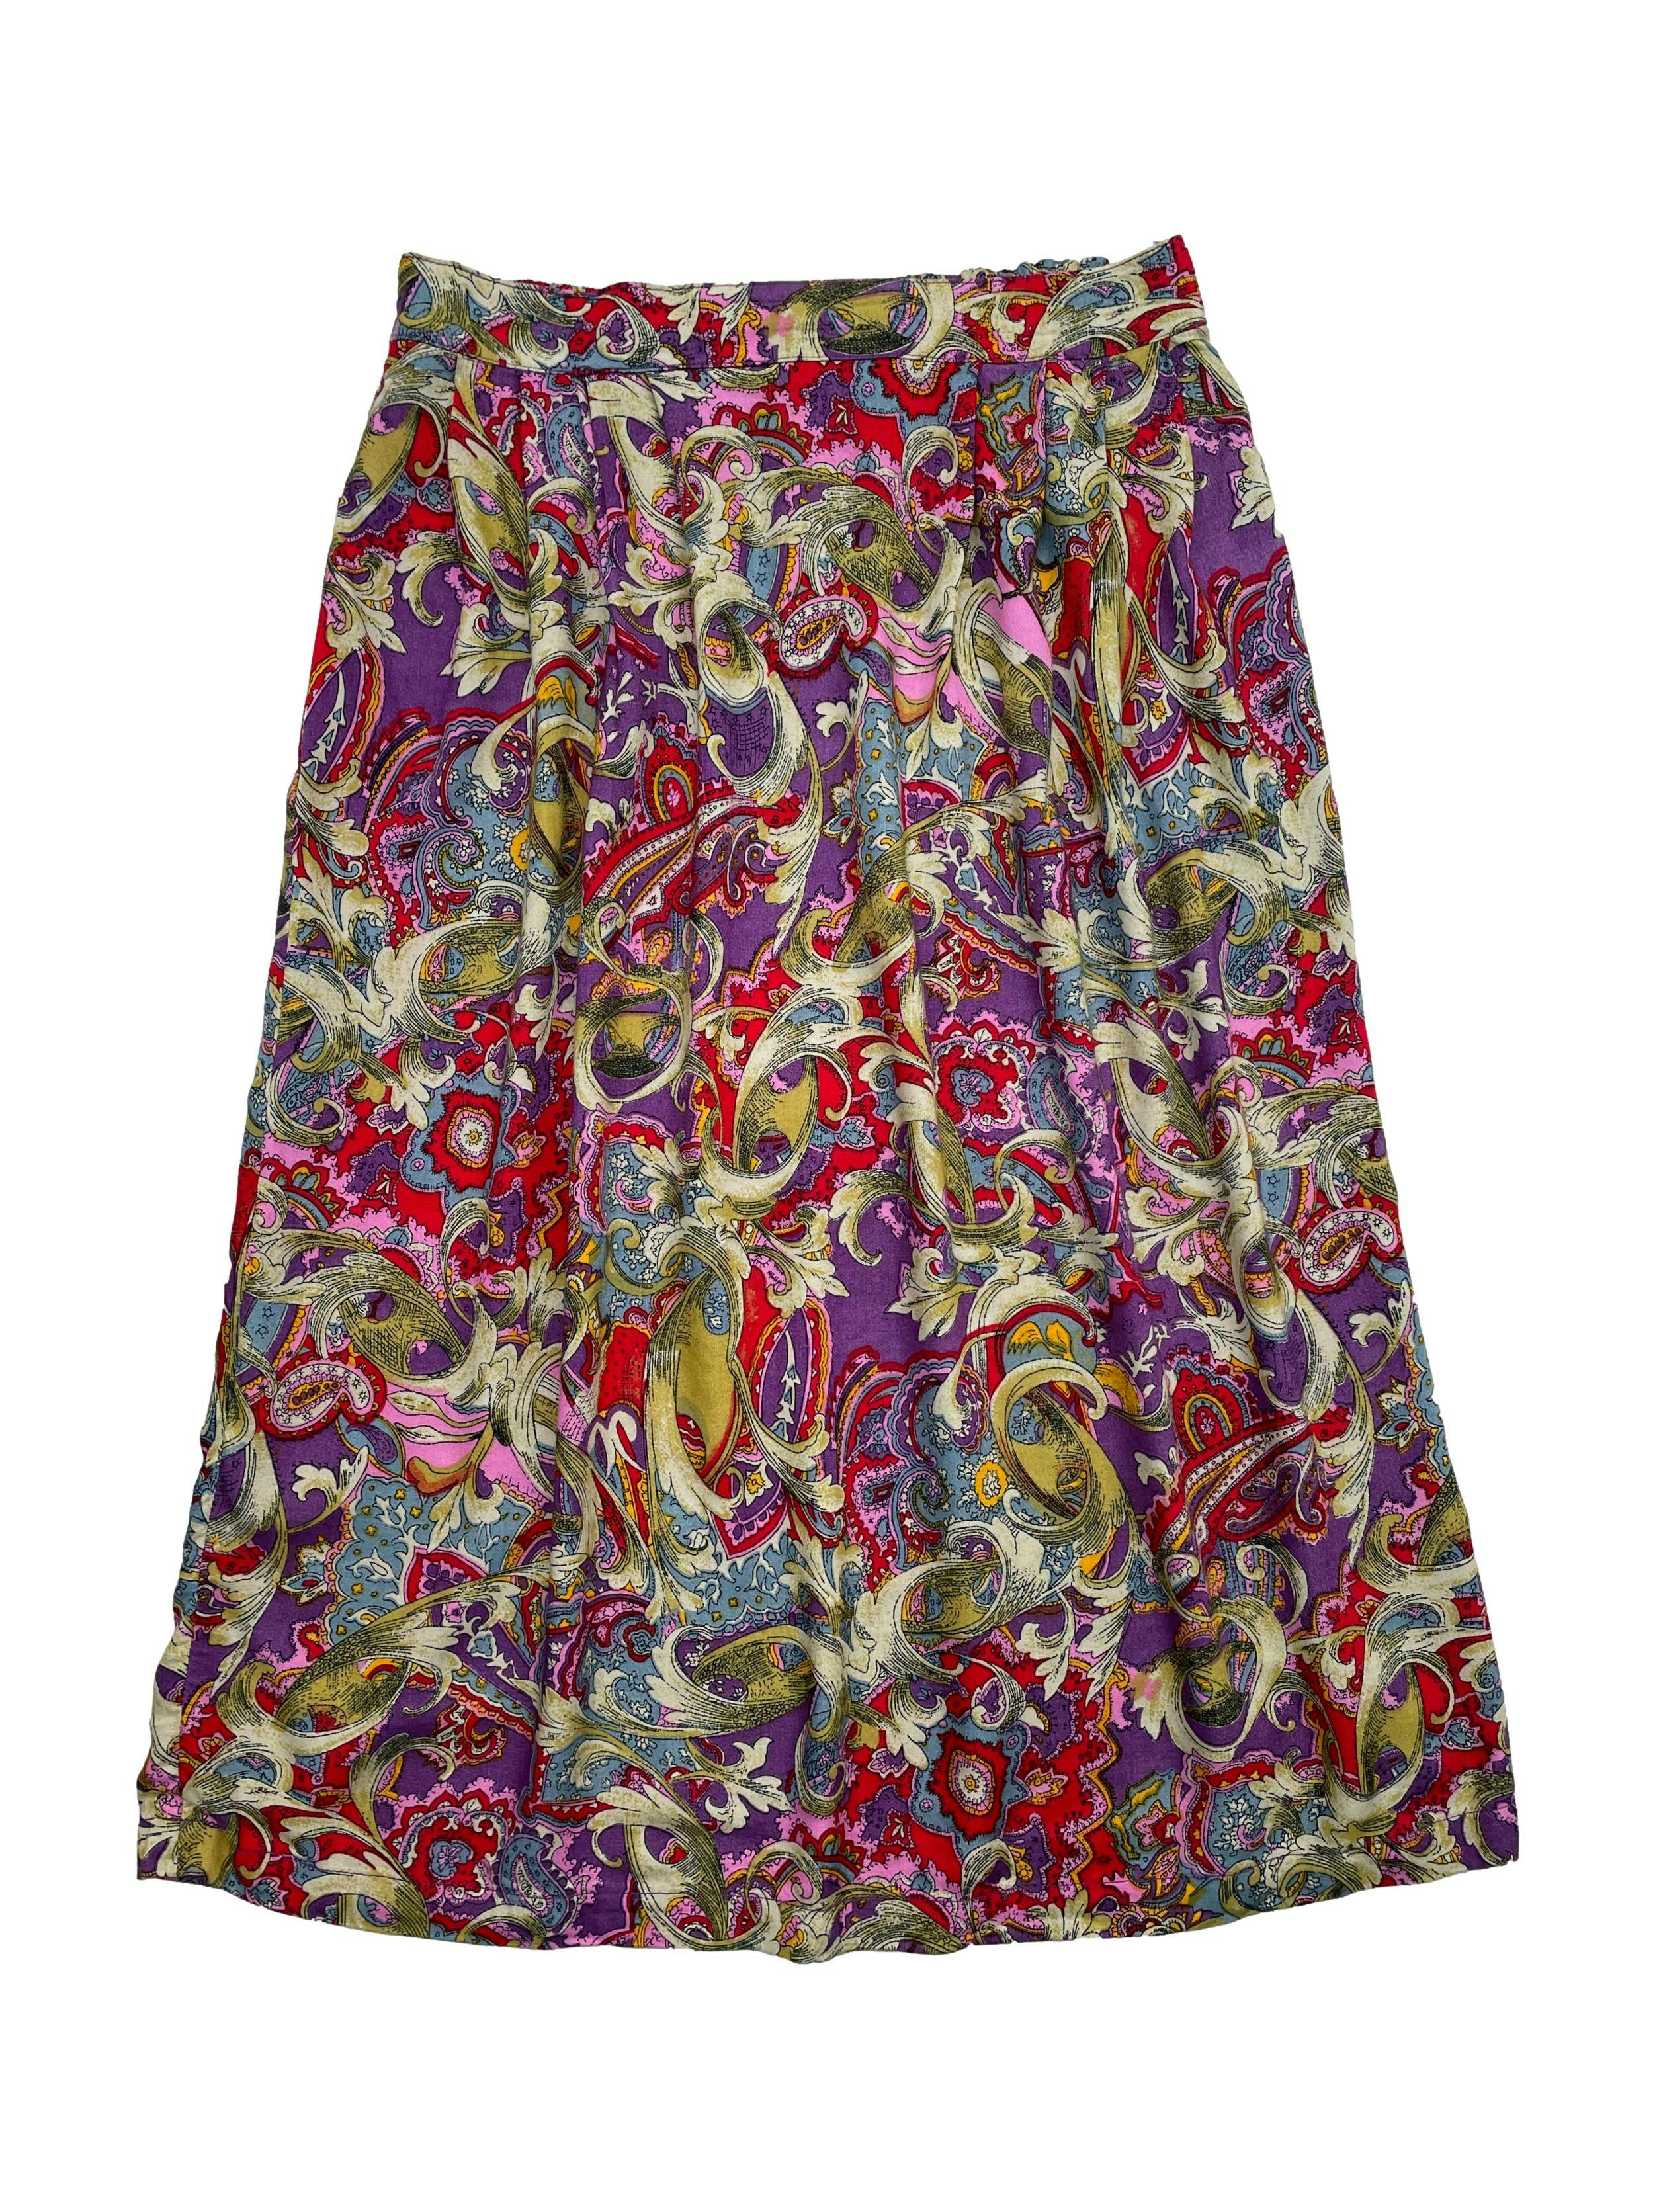 Falda midi vintage con estampado multicolor, elástico en la espalda y pliegues en cintura. Cintura 76 cm sin estirar, Largo 72cm. 